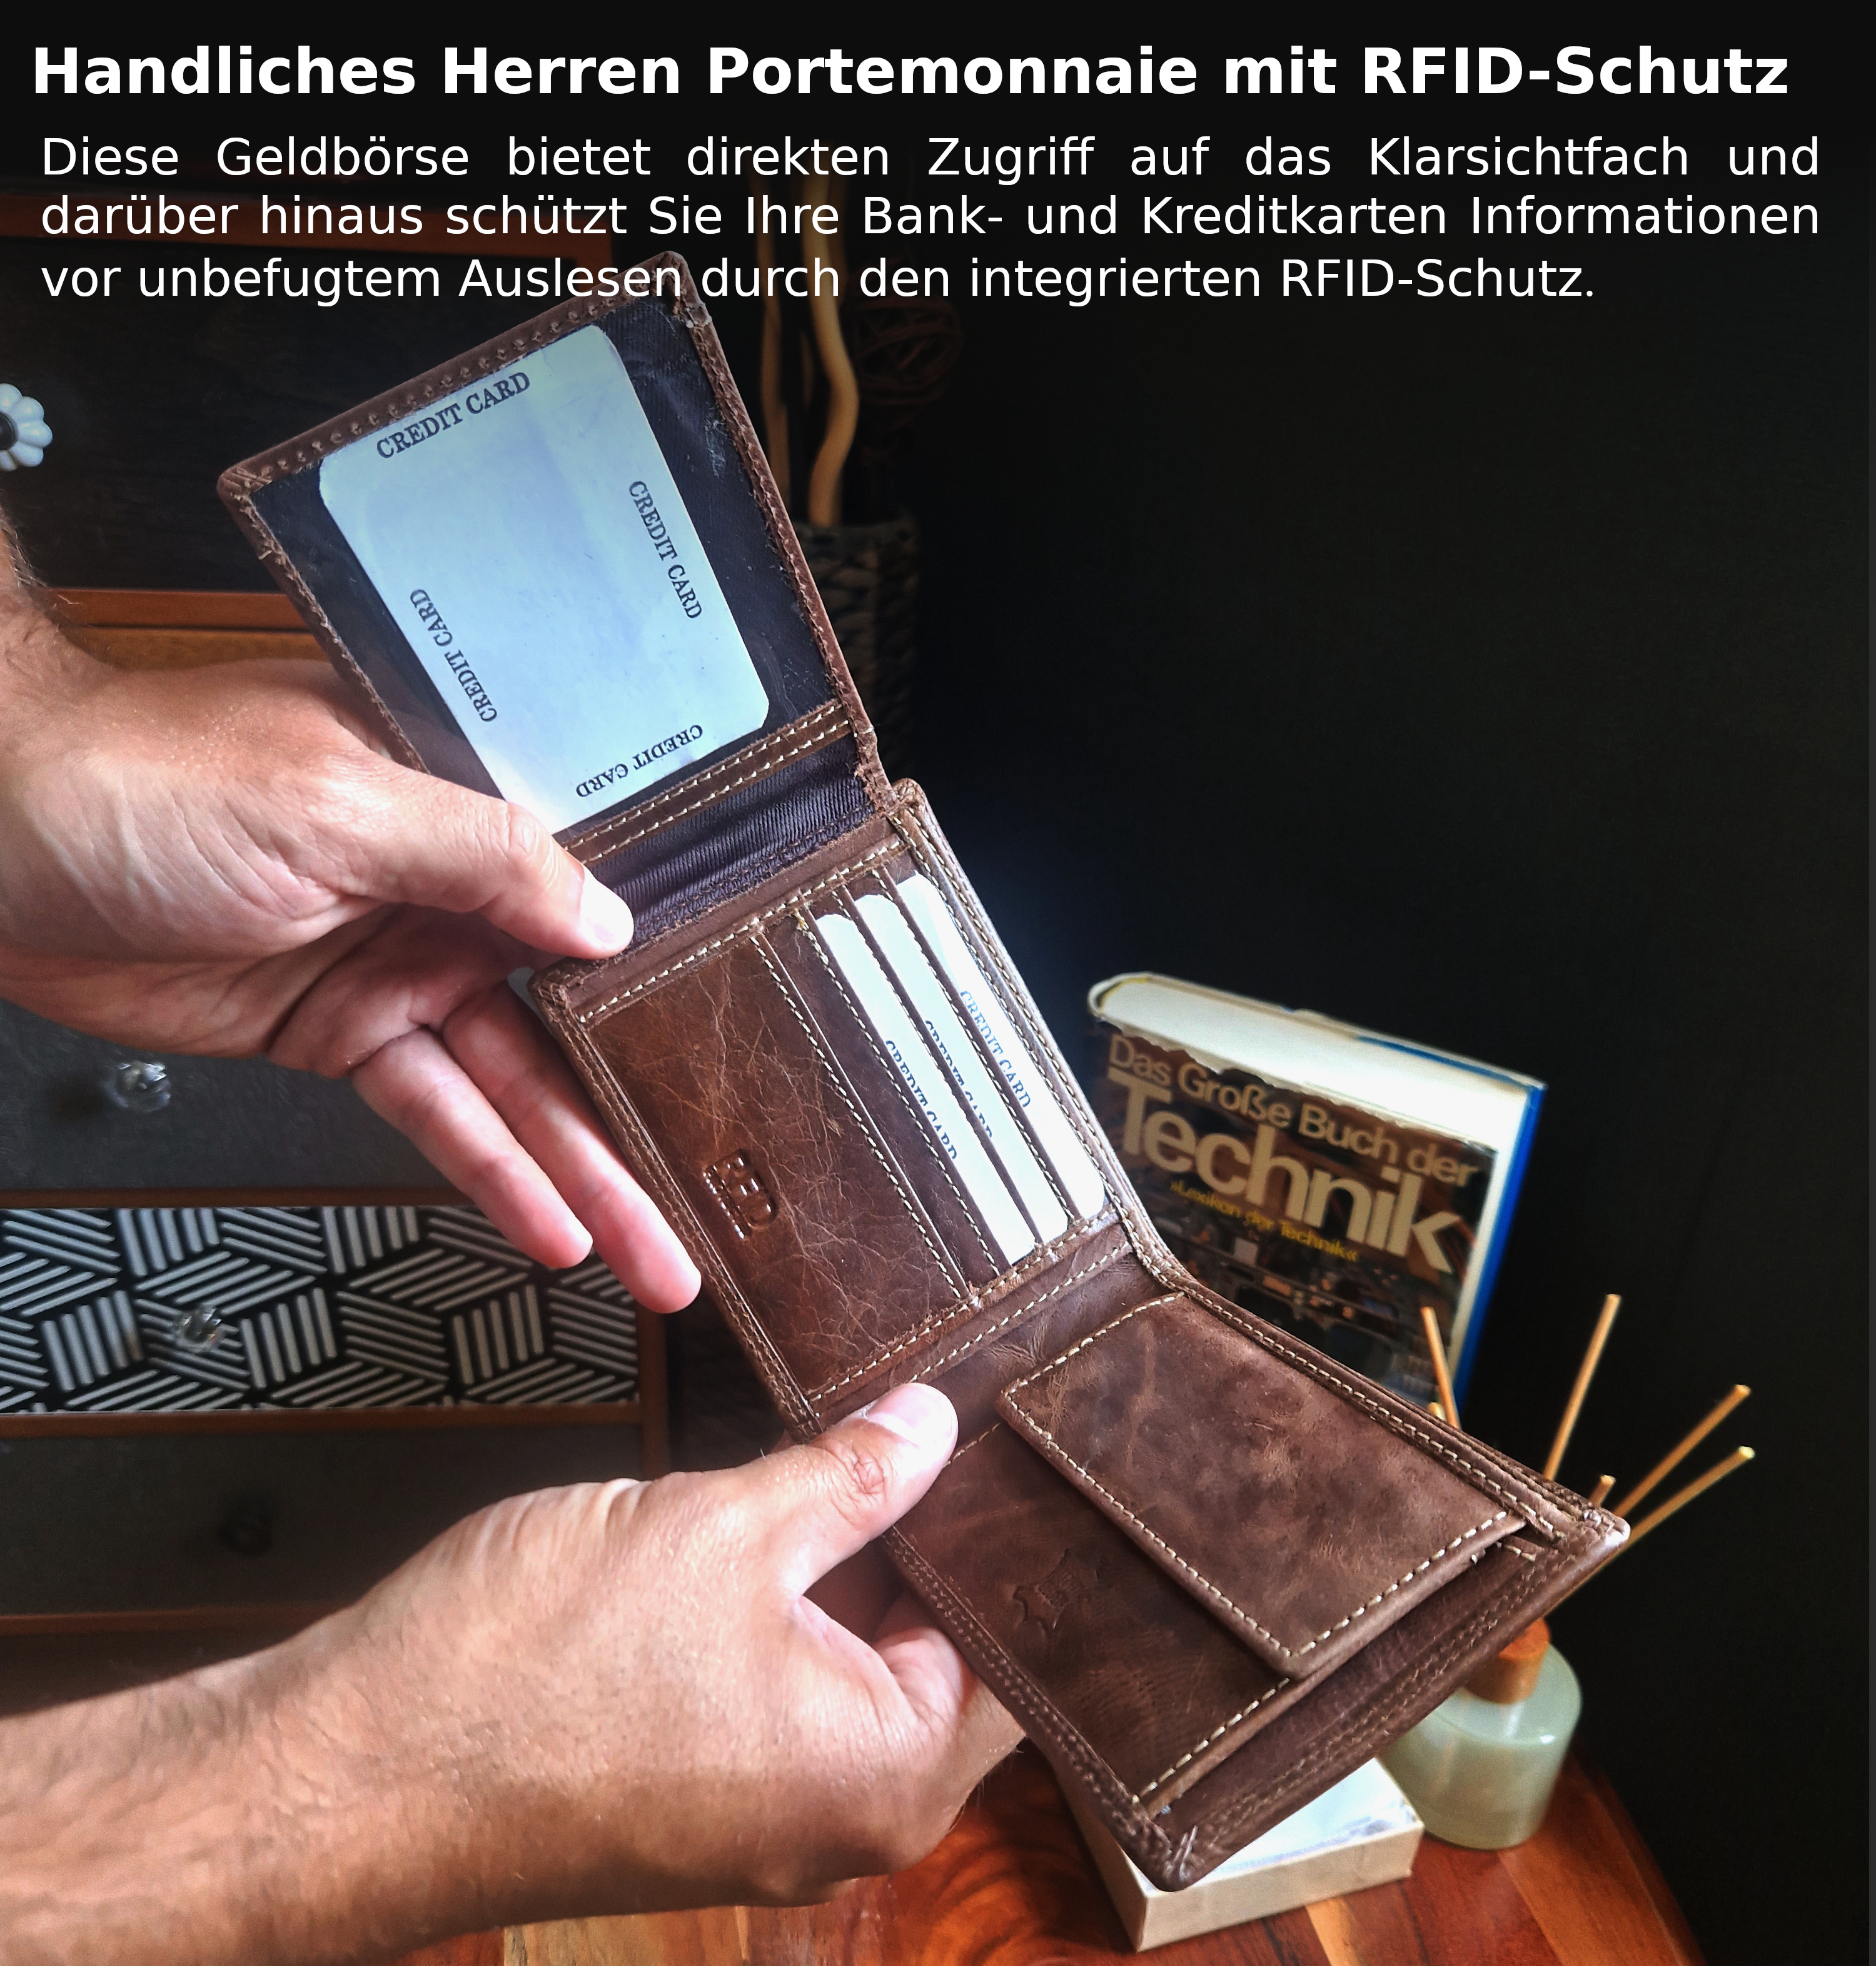 Wildery Herren Geldbörse aus Leder mit integriertem RFID Schutz mit Adler #WI121C